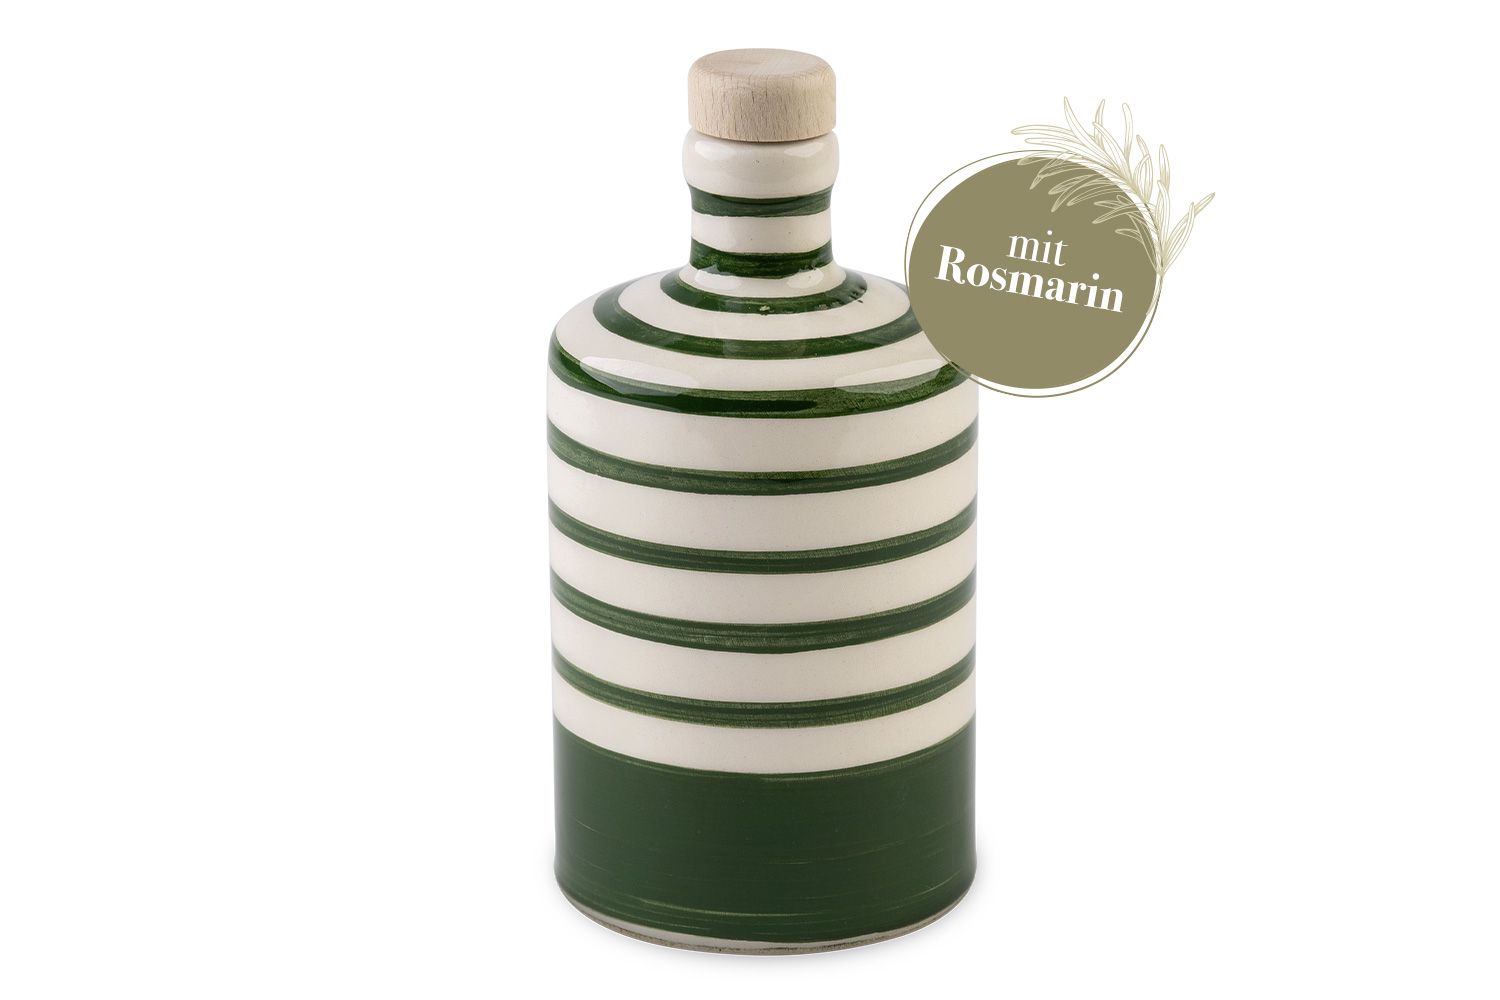 Eine runde, grün-gestreifte Flasche mit Rosmarin-Olivenöl